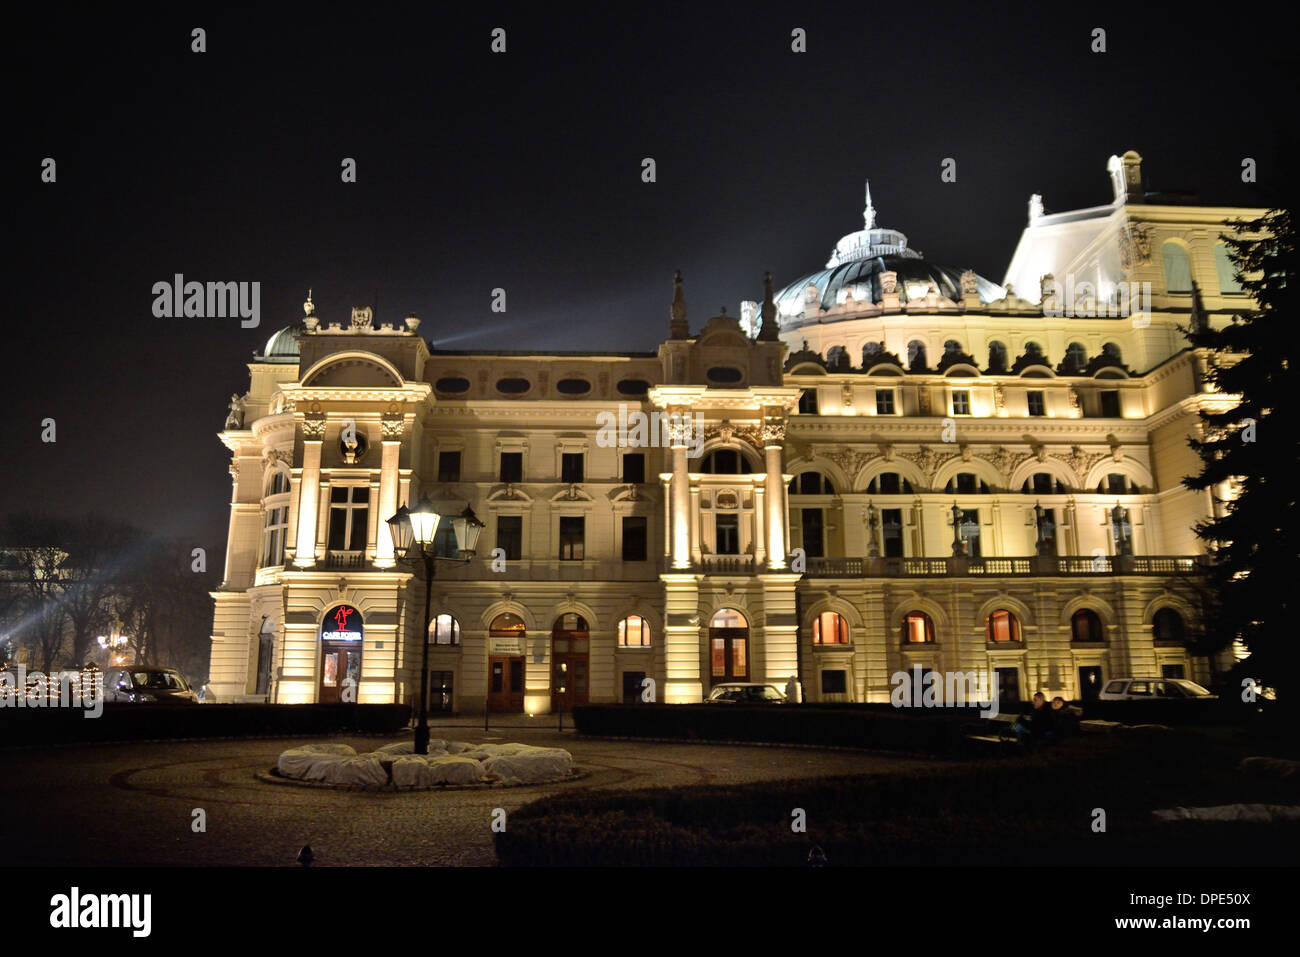 Krakov (Cracovie), Juliusz Slowacki theater krakov Pologne vue nocturne latérale baroque européenne. Les salles. Banque D'Images